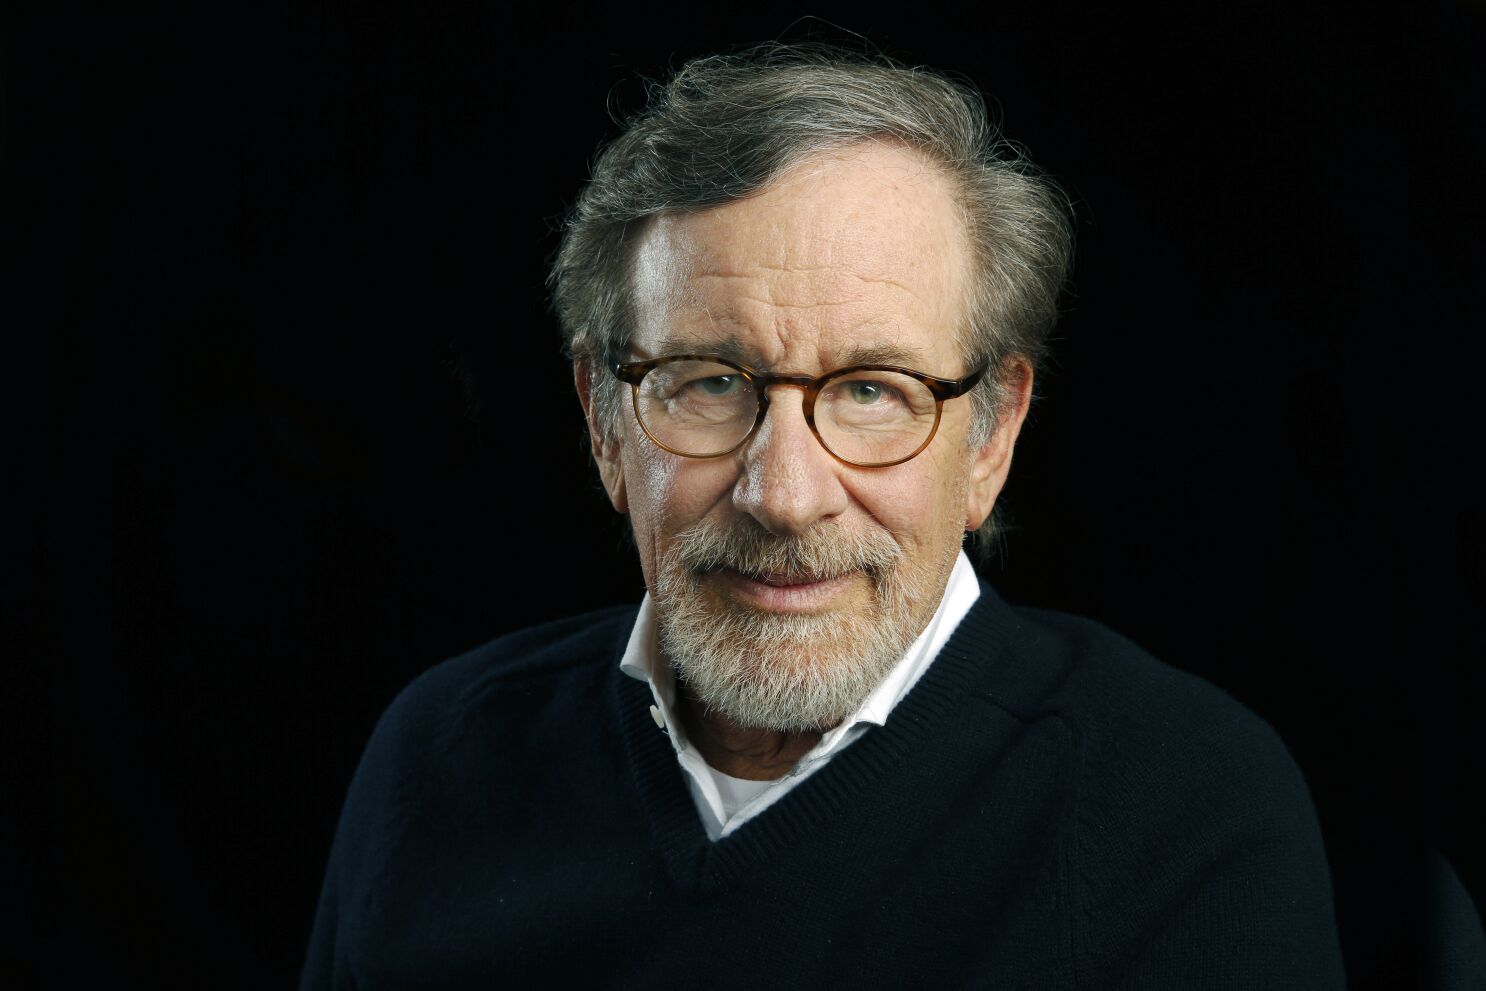 Steven Spielberg hará películas con Netflix tras firmar un acuerdo - Los  Angeles Times